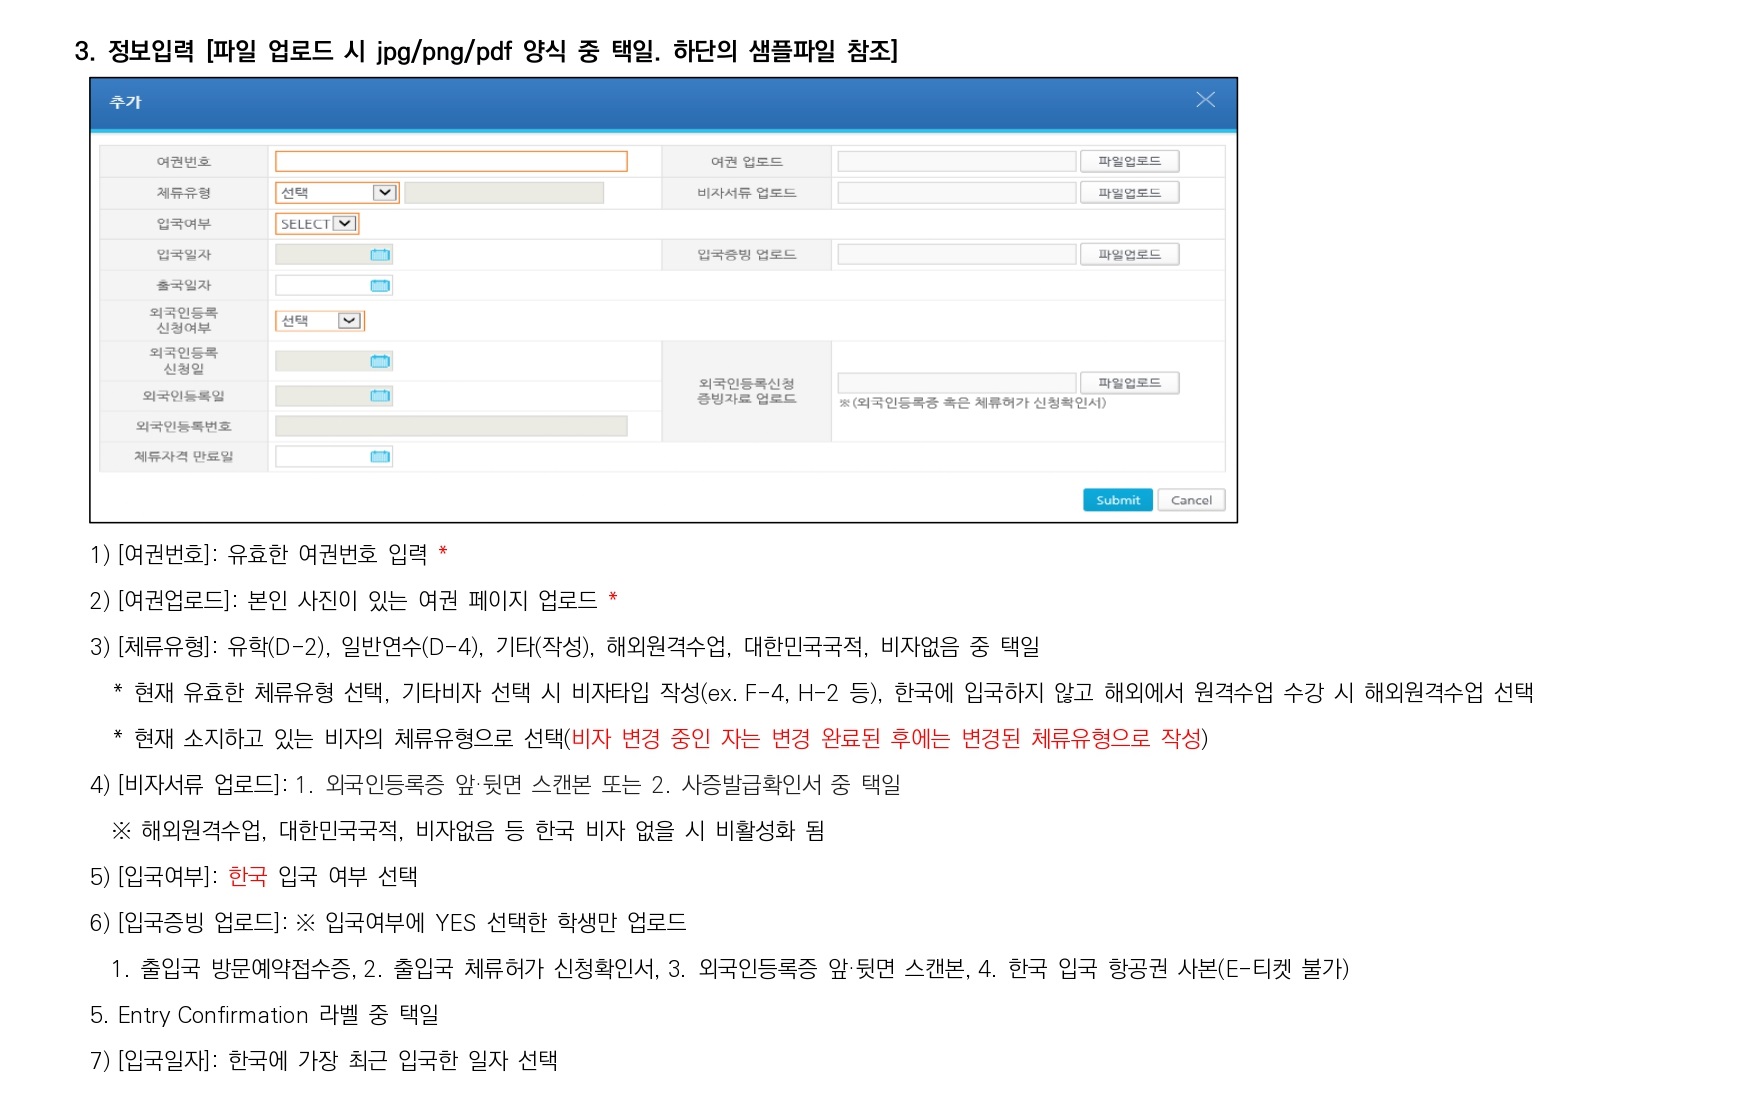 서울캠퍼스 학위과정 유학생 입출국 보고 시스템 입력 매뉴얼_page-0002.jpg